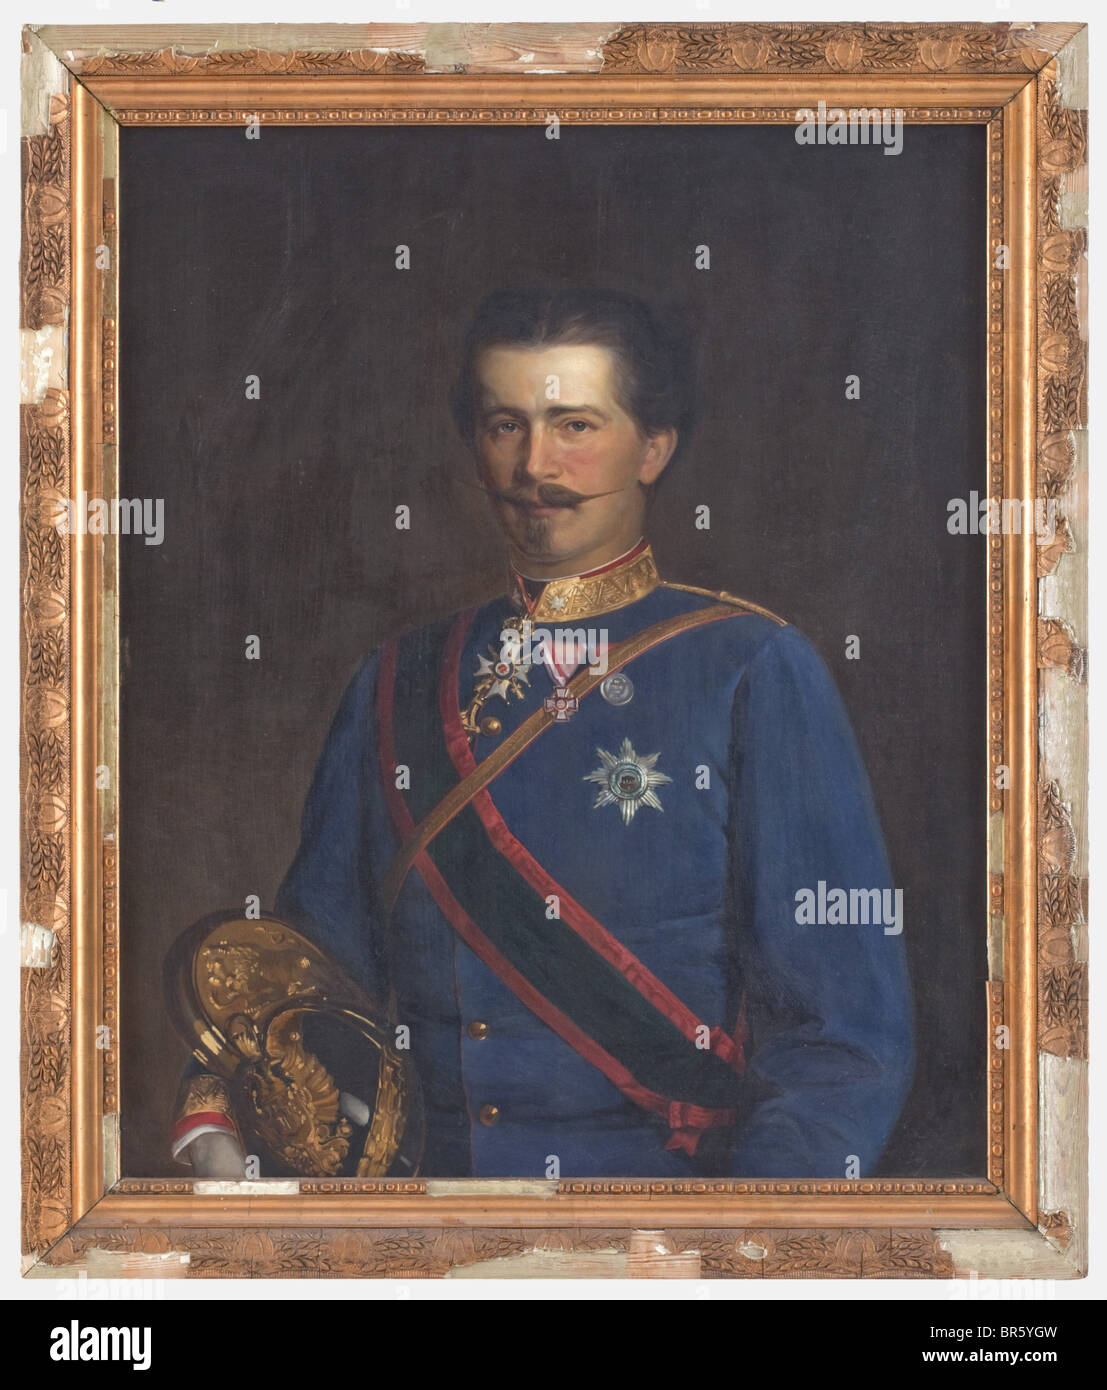 Wilhelm, prince de Schaumburg-Lippe (1834 - 1906), portrait peinture huile sur toile, non signé. Portrait de mi-longueur du prince en uniforme d'un major des dragons, tenant son casque dans la main droite. Il porte la Croix de 1ère classe de l'ordre de la Maison de Schaumburg-Lippe avec des épées (décernées en 1871), la ceinture et la Star de l'ordre de la Maison Anhalt d'Albrecht l'ours ainsi que la Croix du mérite militaire autrichienne. Taille de l'image 73 x 90 cm, cadre en plâtre endommagé. Personnes, XIXe siècle, impérial, Autriche, autrichienne, monarchie du Danube, Empire, objet, objets, St, Banque D'Images